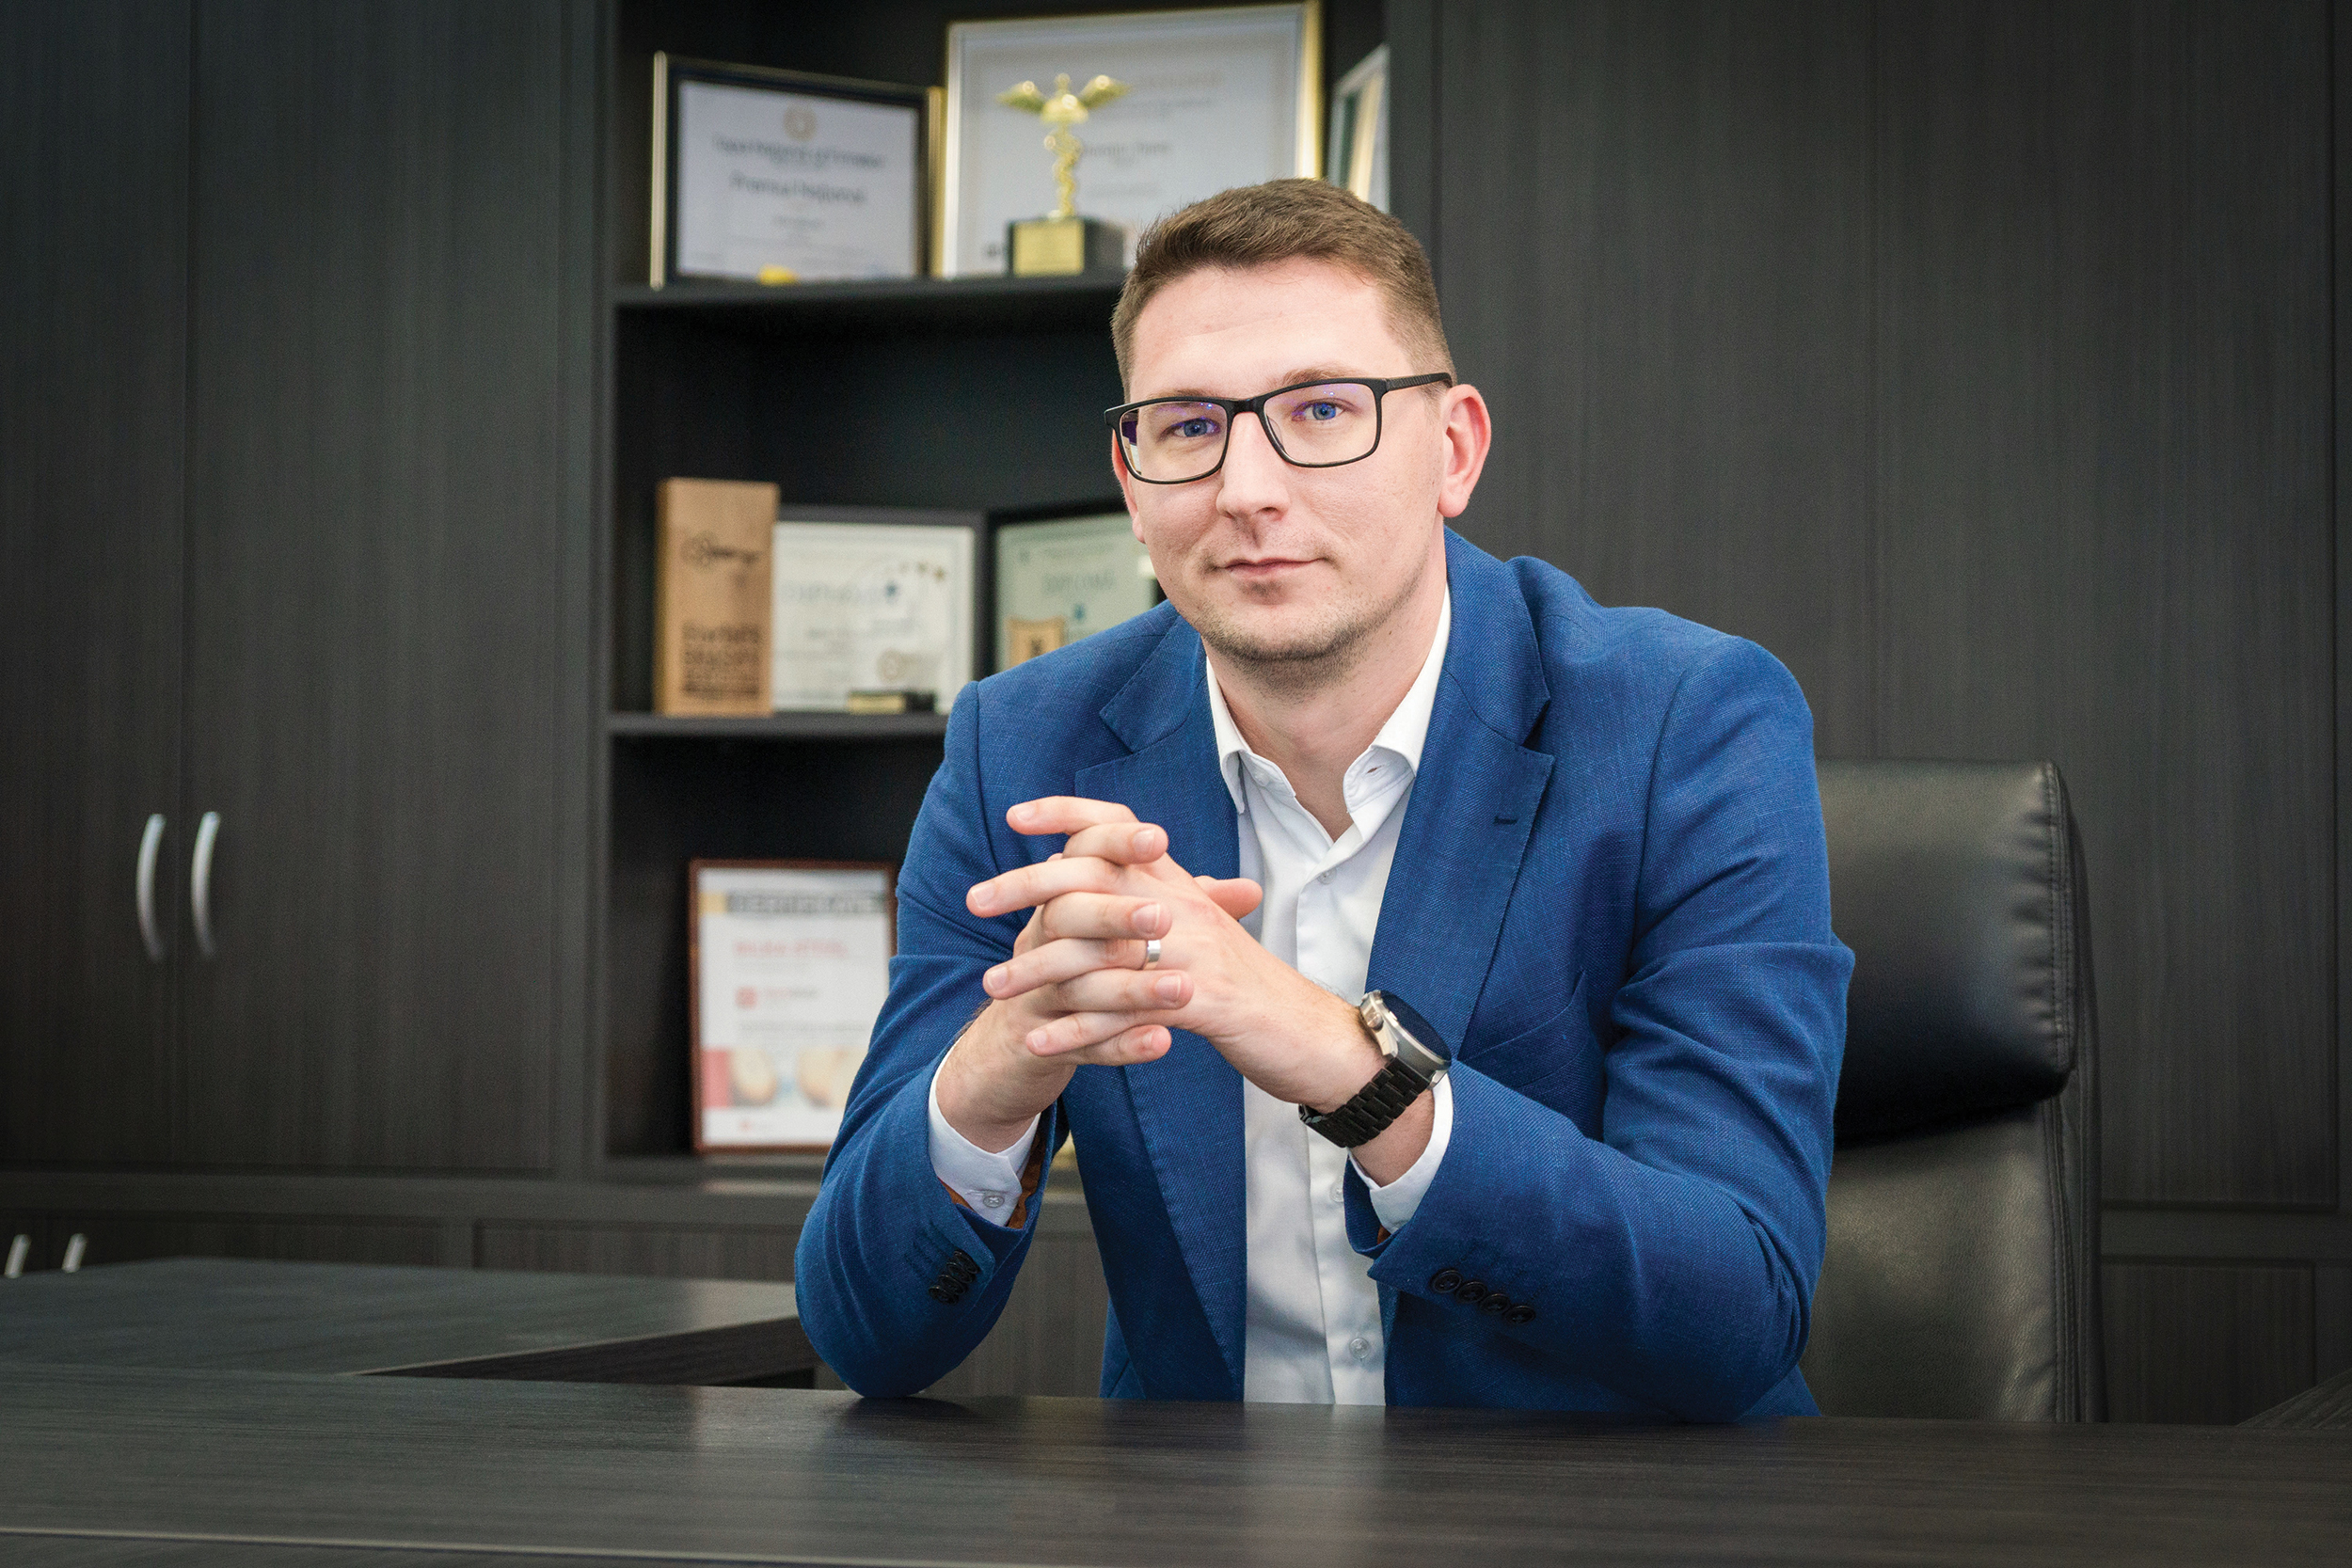 Business Magazin. Cine este Răzvan Galavan, cel care la 30 de ani este directorul de achiziţii şi dezvoltare al Bilka Steel, o afacere la care a ajuns la vânzări de 1,15 miliarde de lei